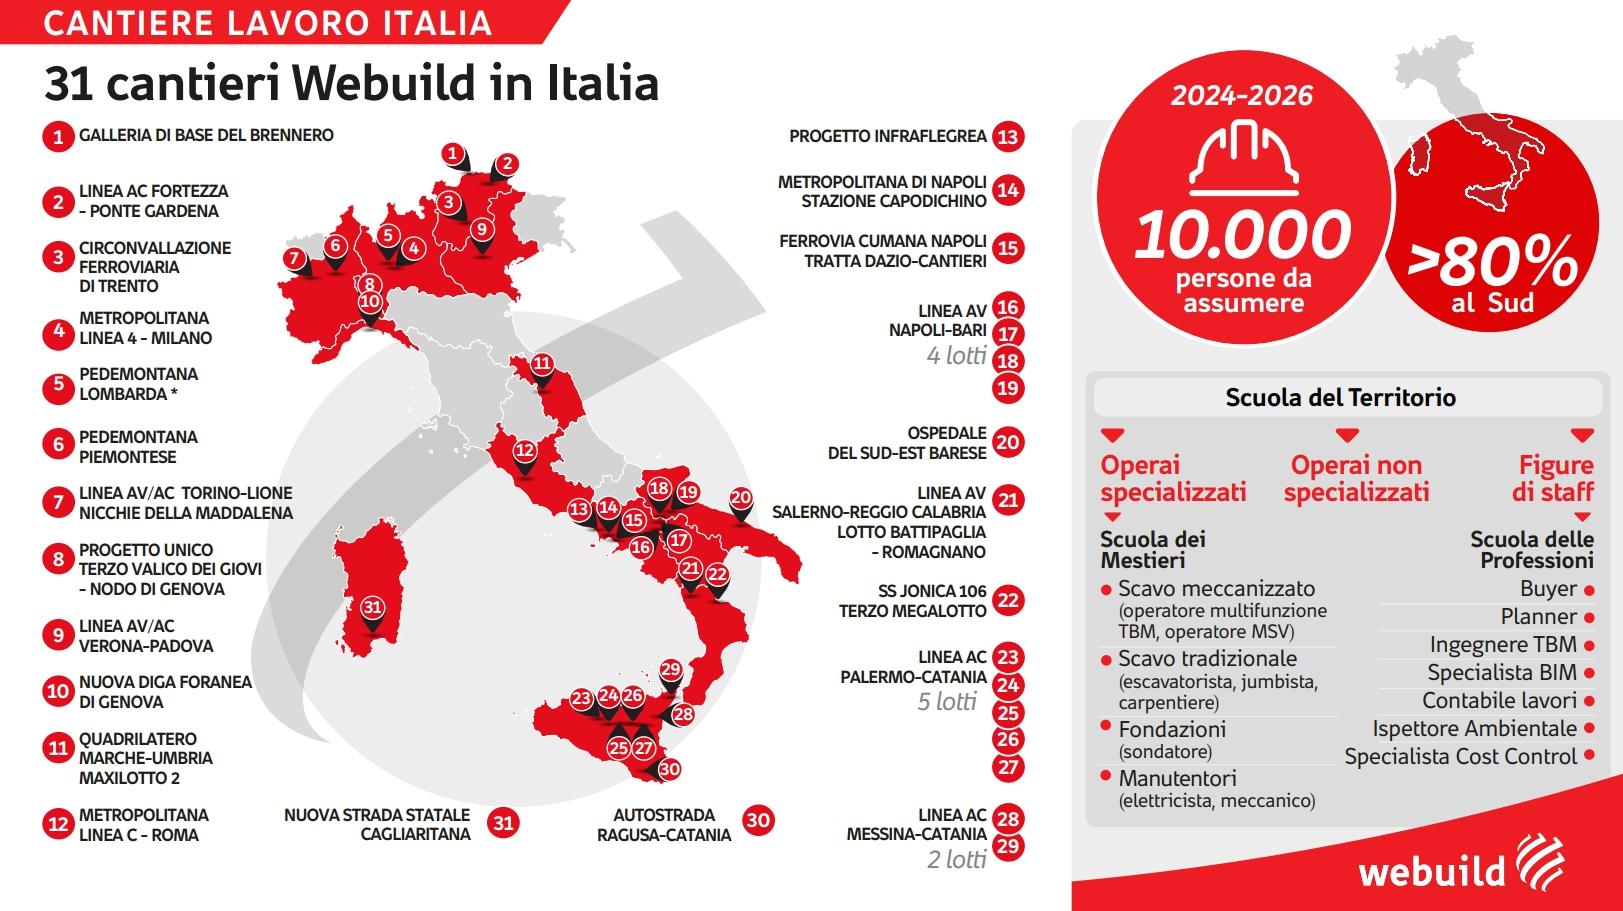 Cantiere Lavoro Italia. 31 progetti Webuild in Italia